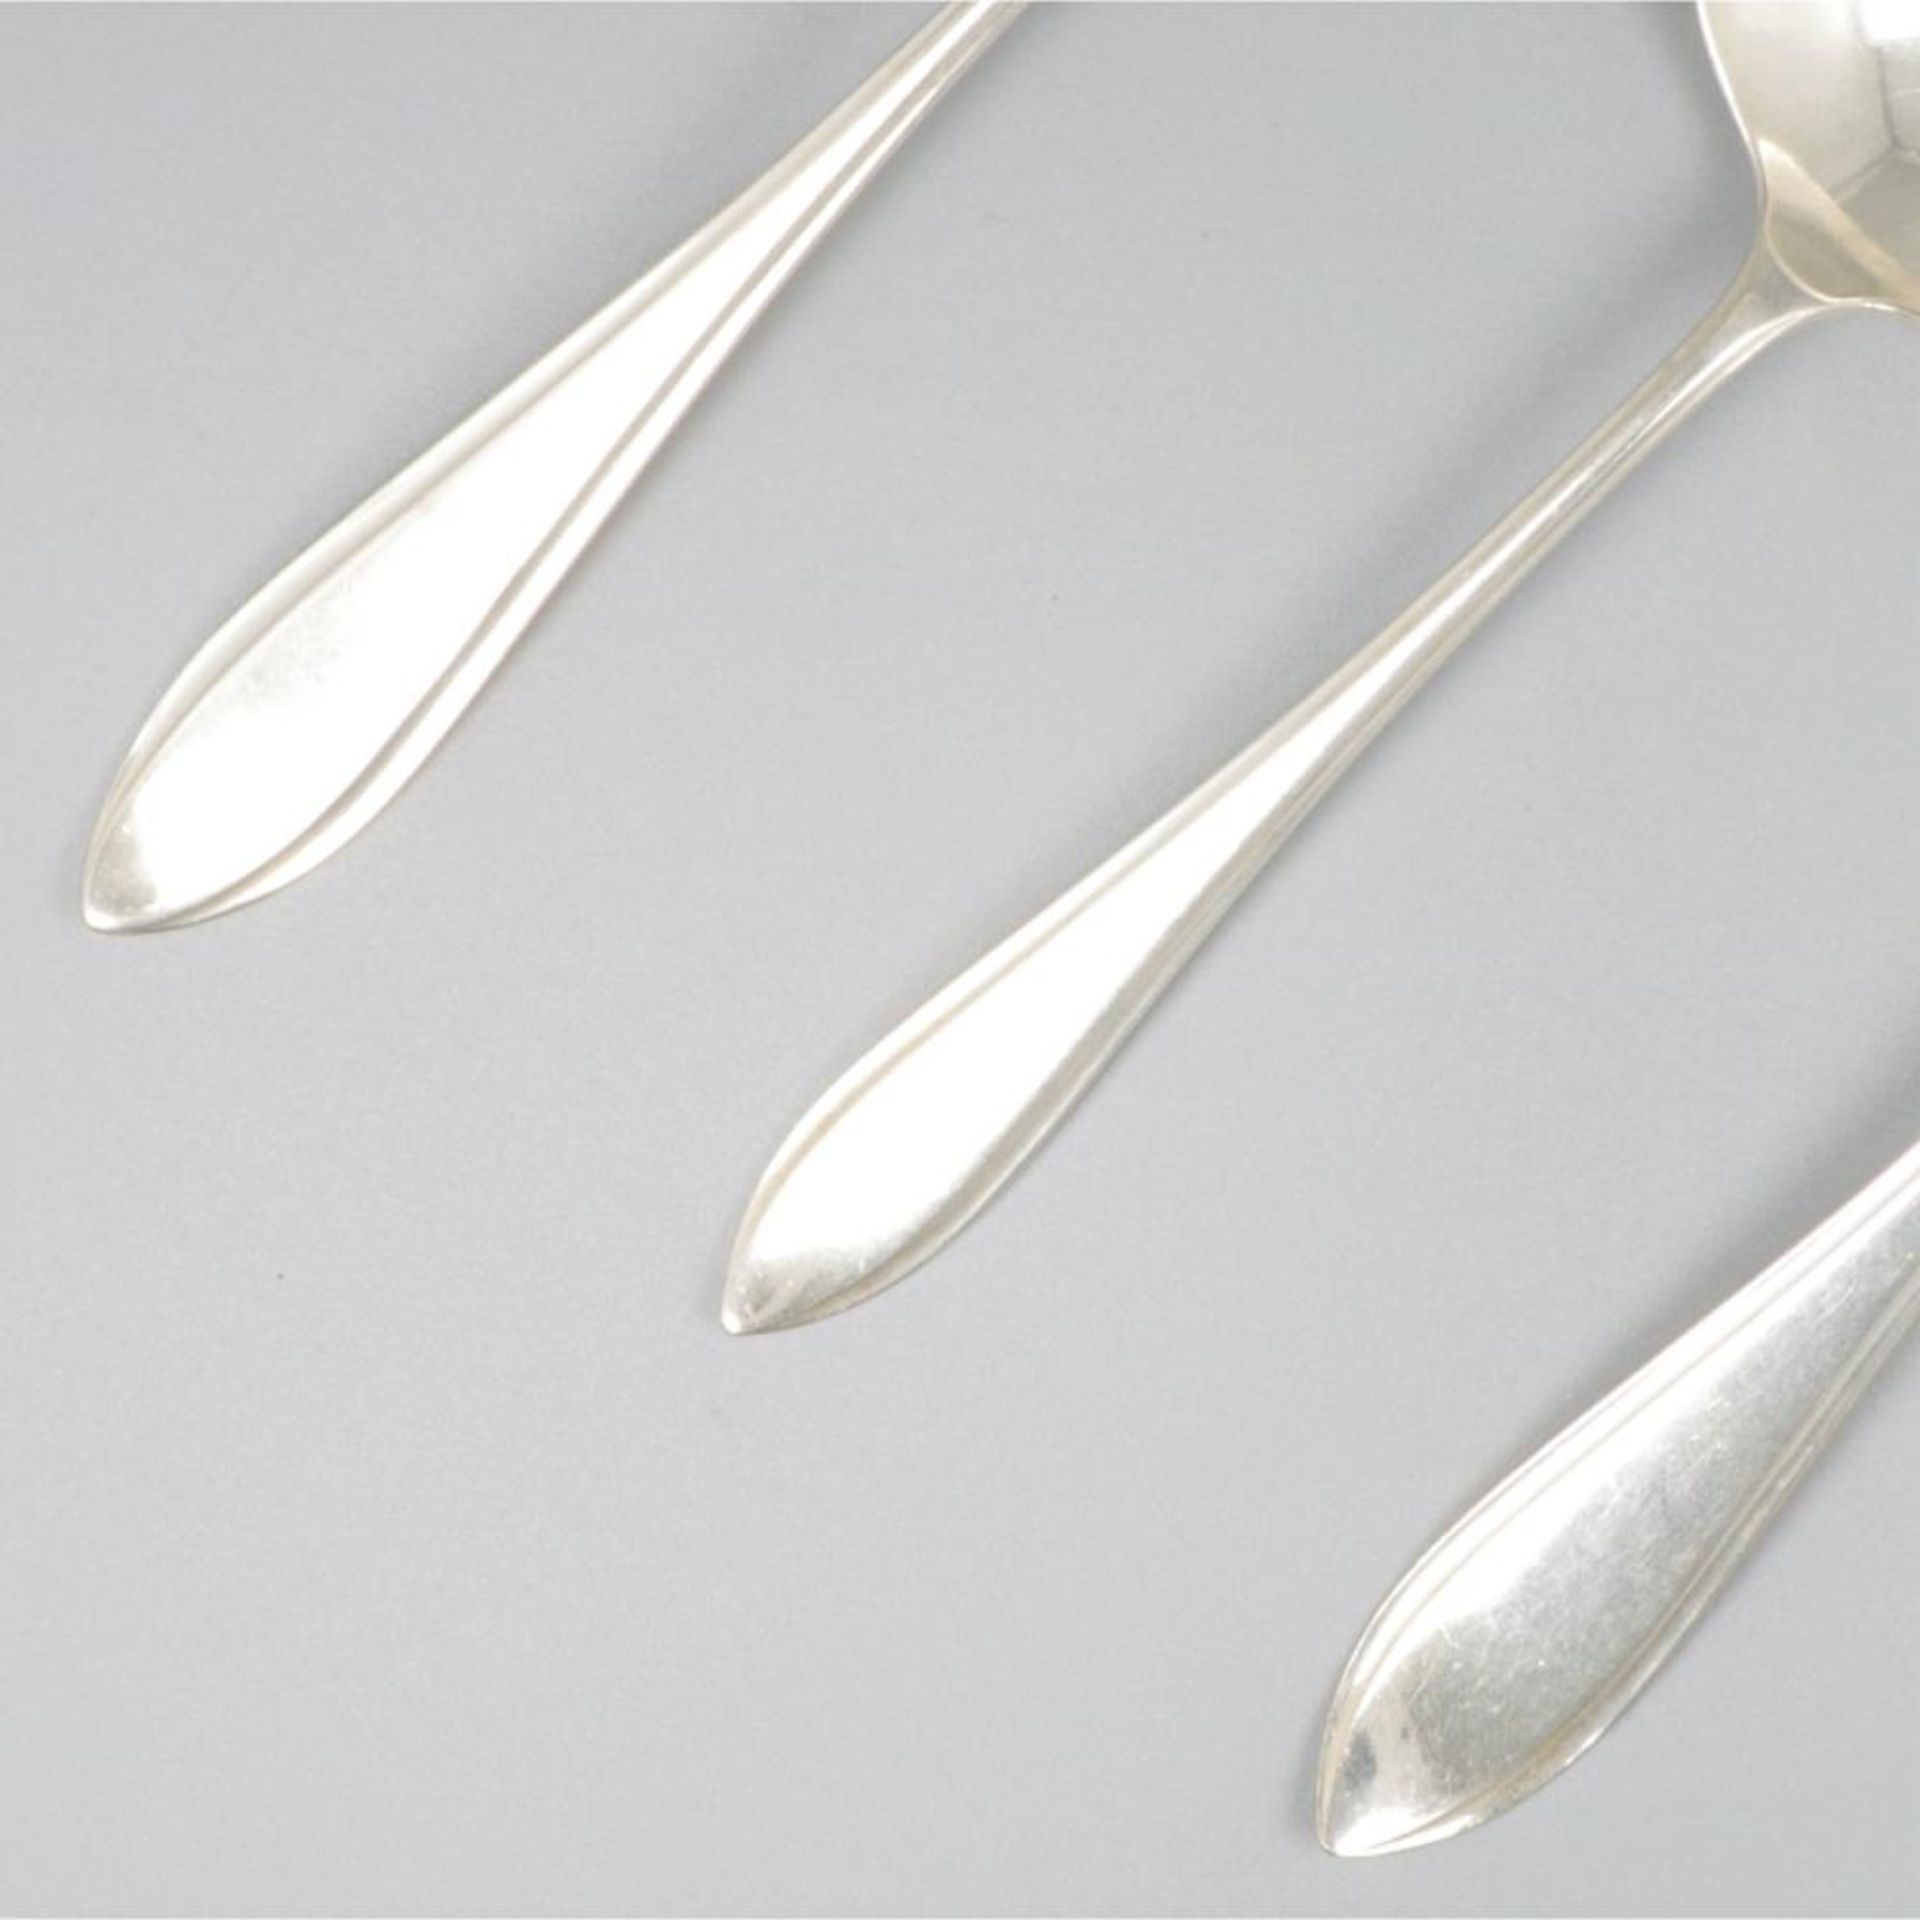 3-piece set of ladles "Hollands Puntfilet" silver. - Image 3 of 7